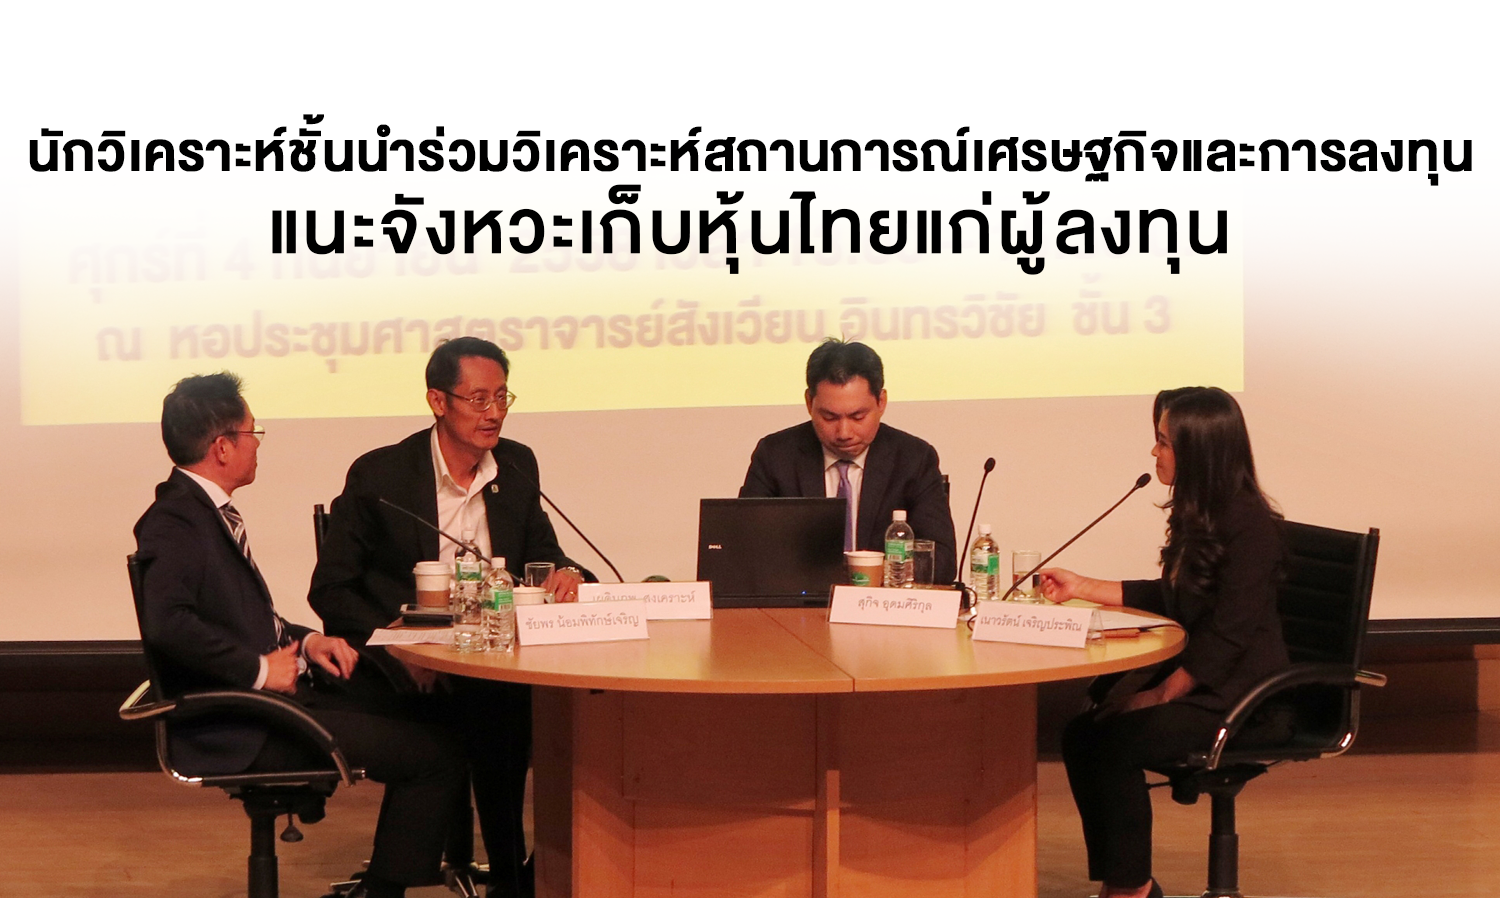 นักวิเคราะห์ชั้นนำร่วมวิเคราะห์สถานการณ์เศรษฐกิจและการลงทุน แนะจังหวะเก็บหุ้นไทยแก่ผู้ลงทุน